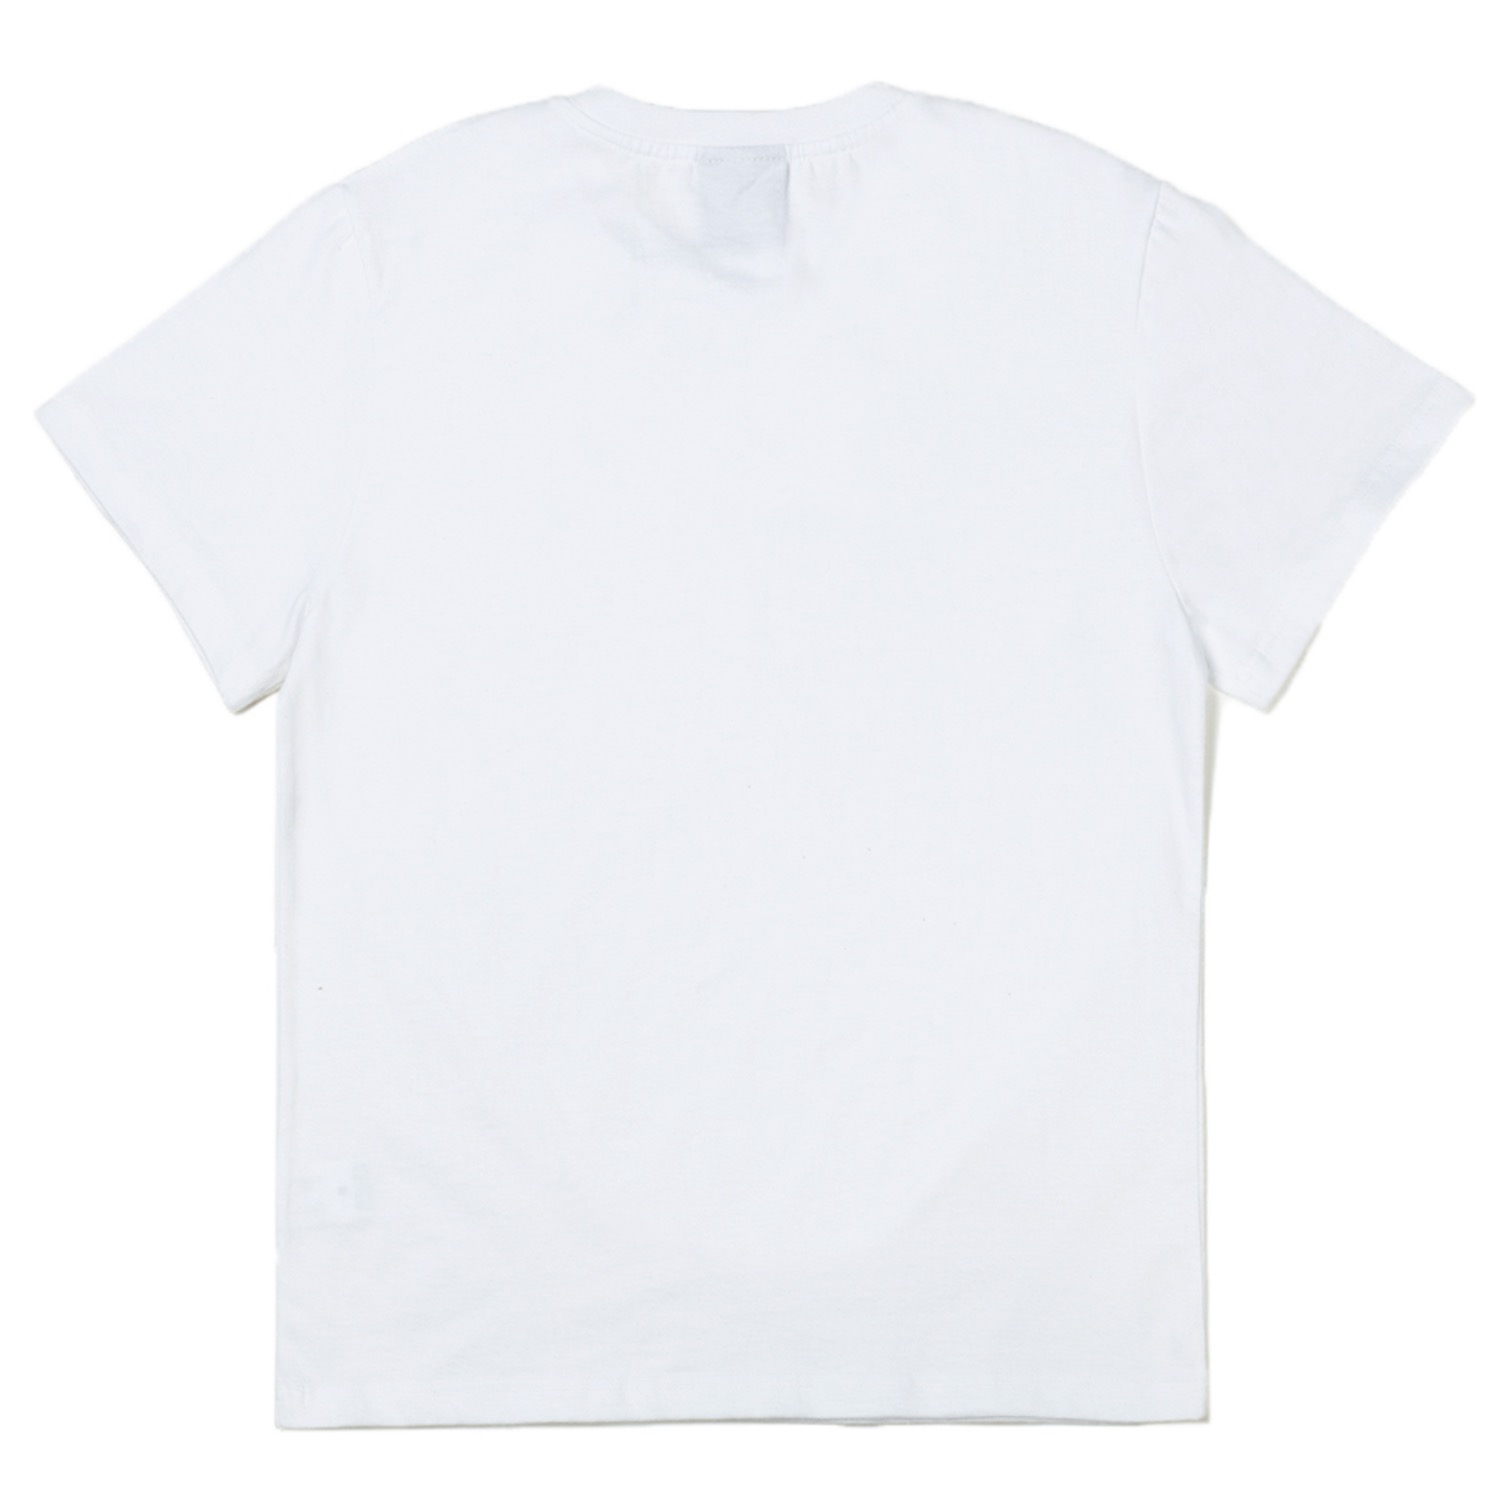 서울그린꽃 반팔티 화이트Seoul Green Flower Short Sleeve T-shirts (White)